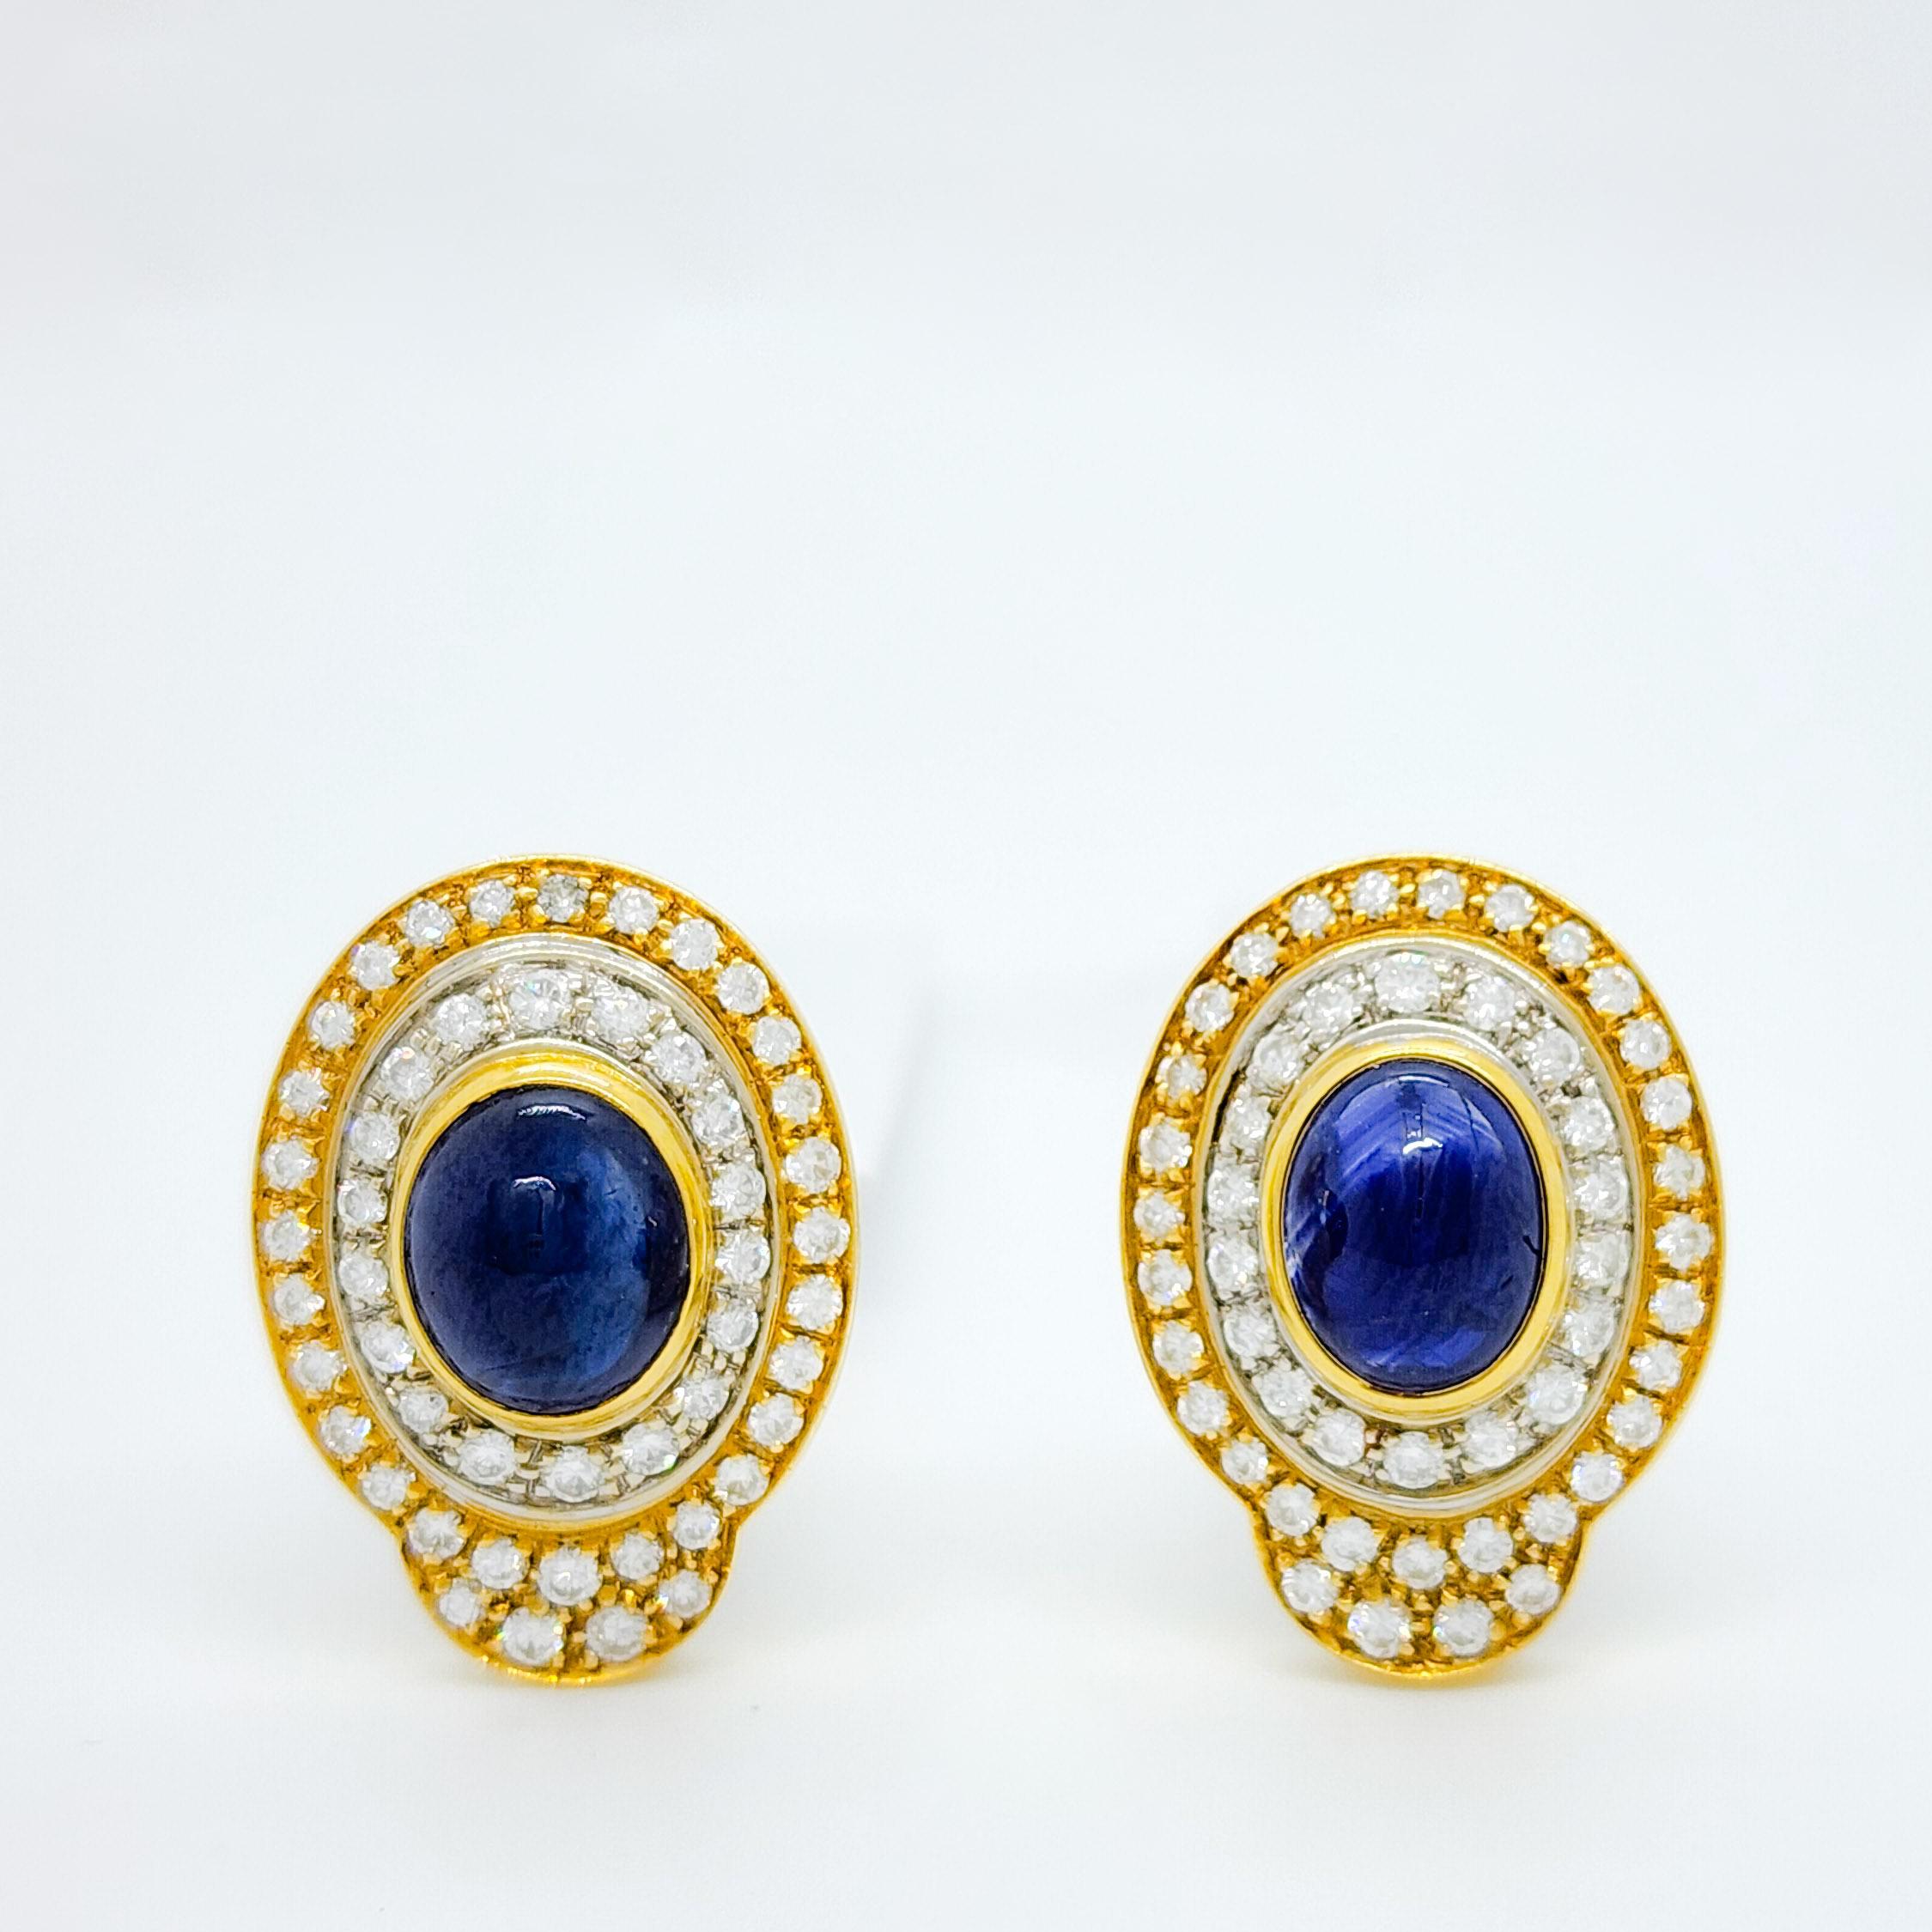 Schöne ovale Cabochons mit 4,00 ct. blauen Saphiren und 3,00 ct. weißen Diamanten von guter Qualität.  Handgefertigt aus 18 Karat Gelb- und Weißgold.